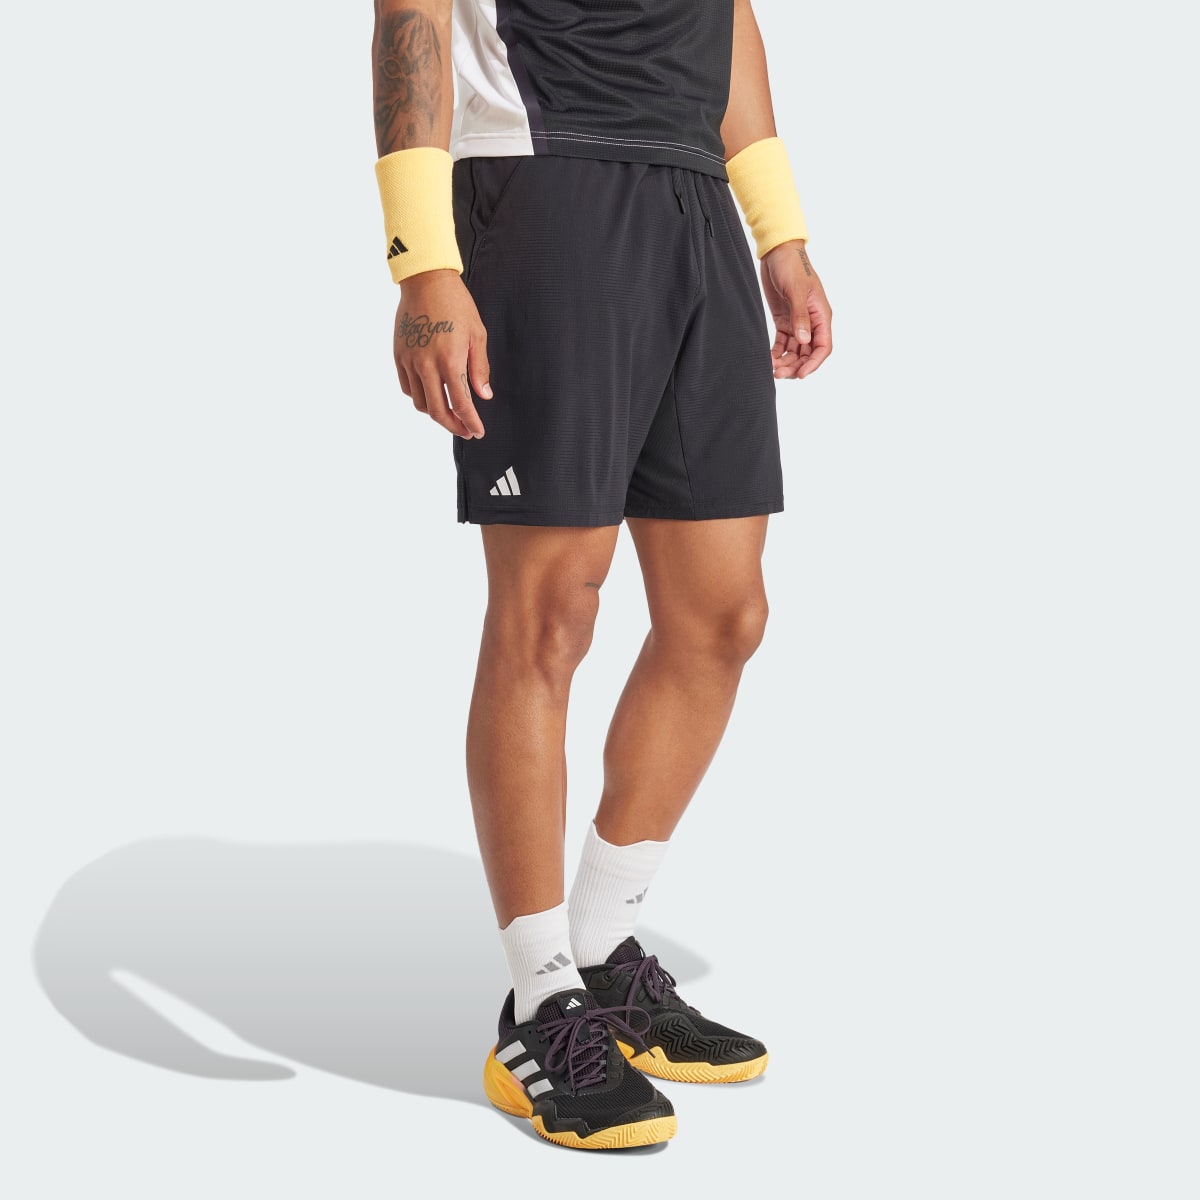 Adidas Tennis Ergo Shorts. 4